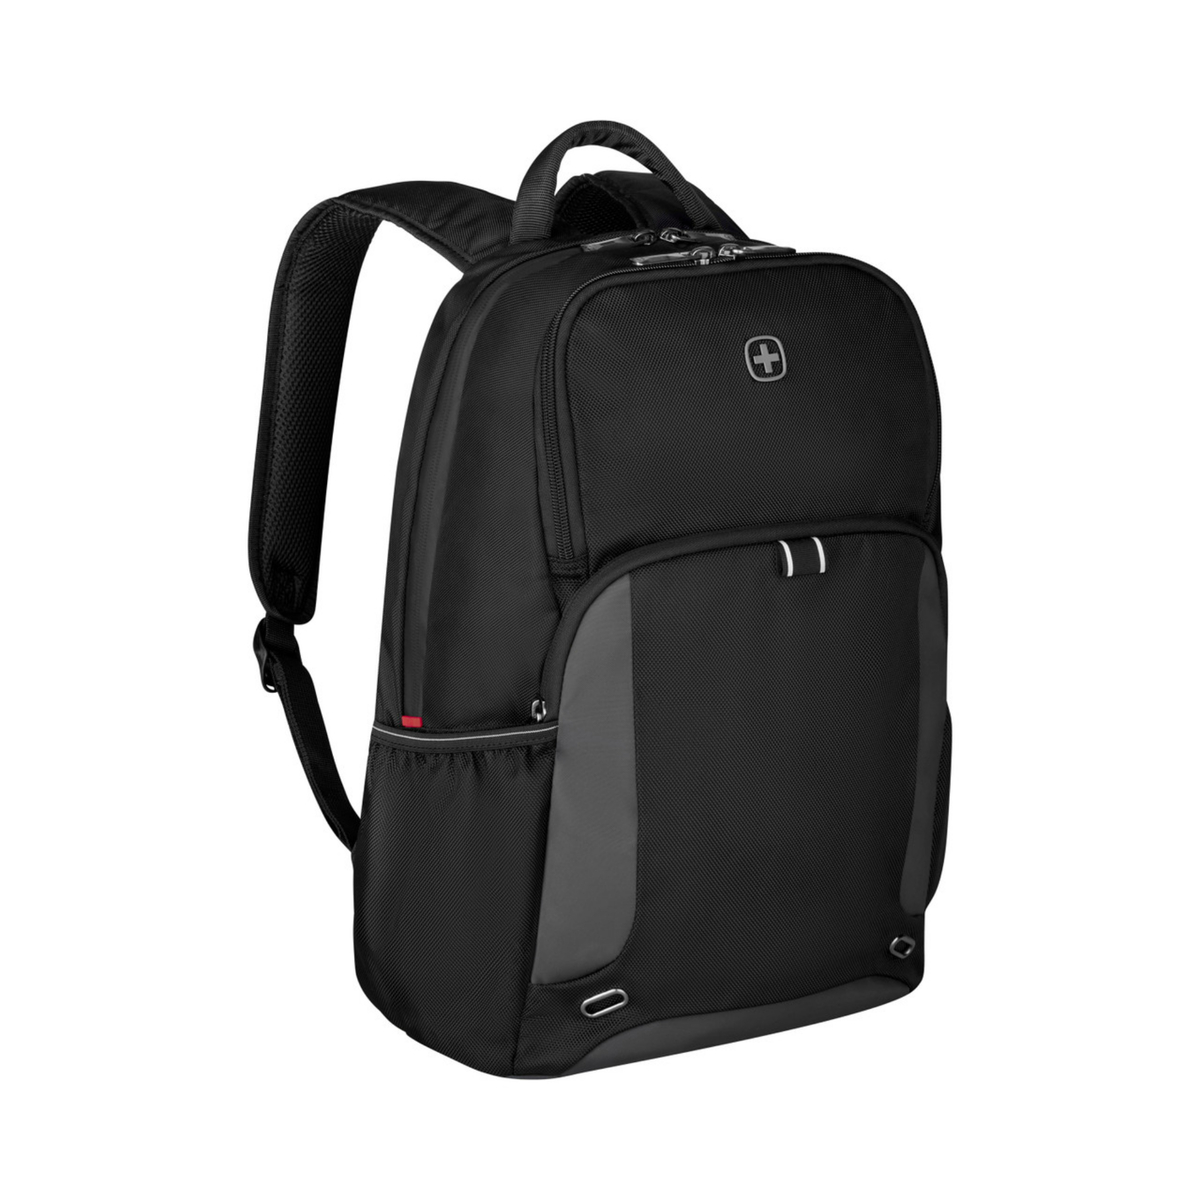 Wenger XE Tryal 15.6" Laptop Backpack with Tablet Pocket, Black, 612735